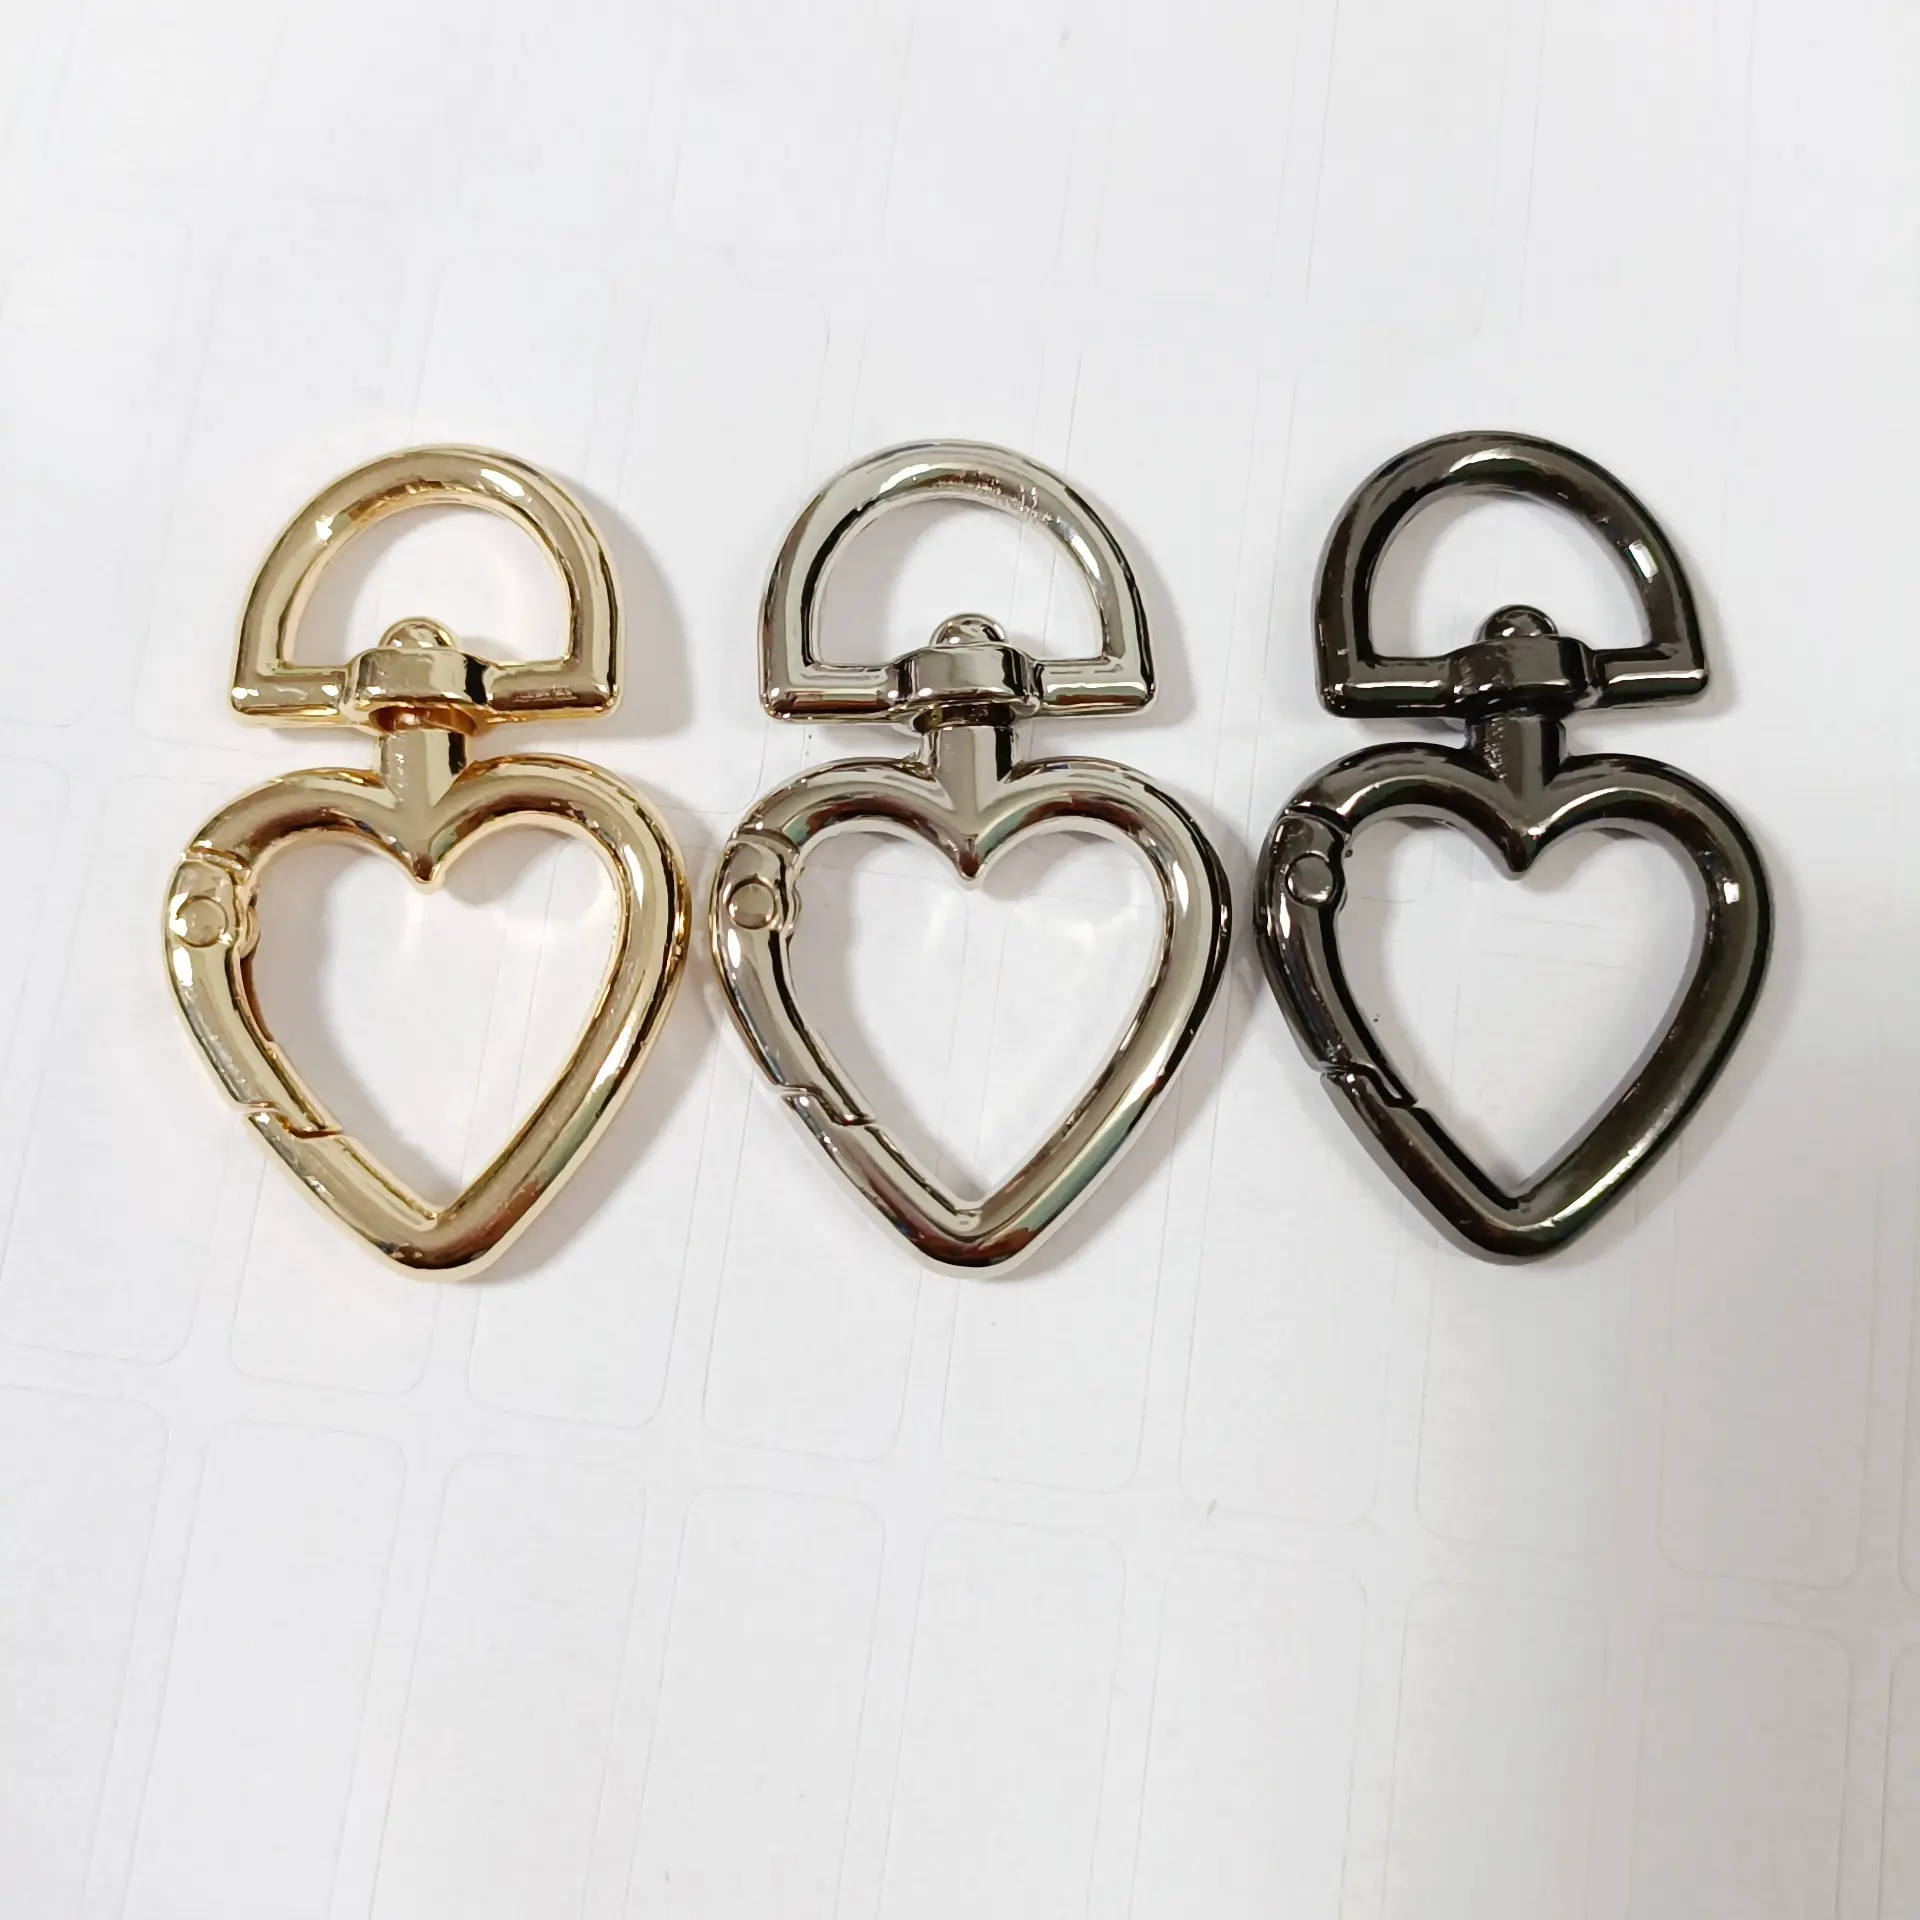 Portachiavi moda a forma di cuore ganci portachiavi portachiavi con fibbia a forma di cuore portachiavi in metallo per giocattoli accessori per borse indumento